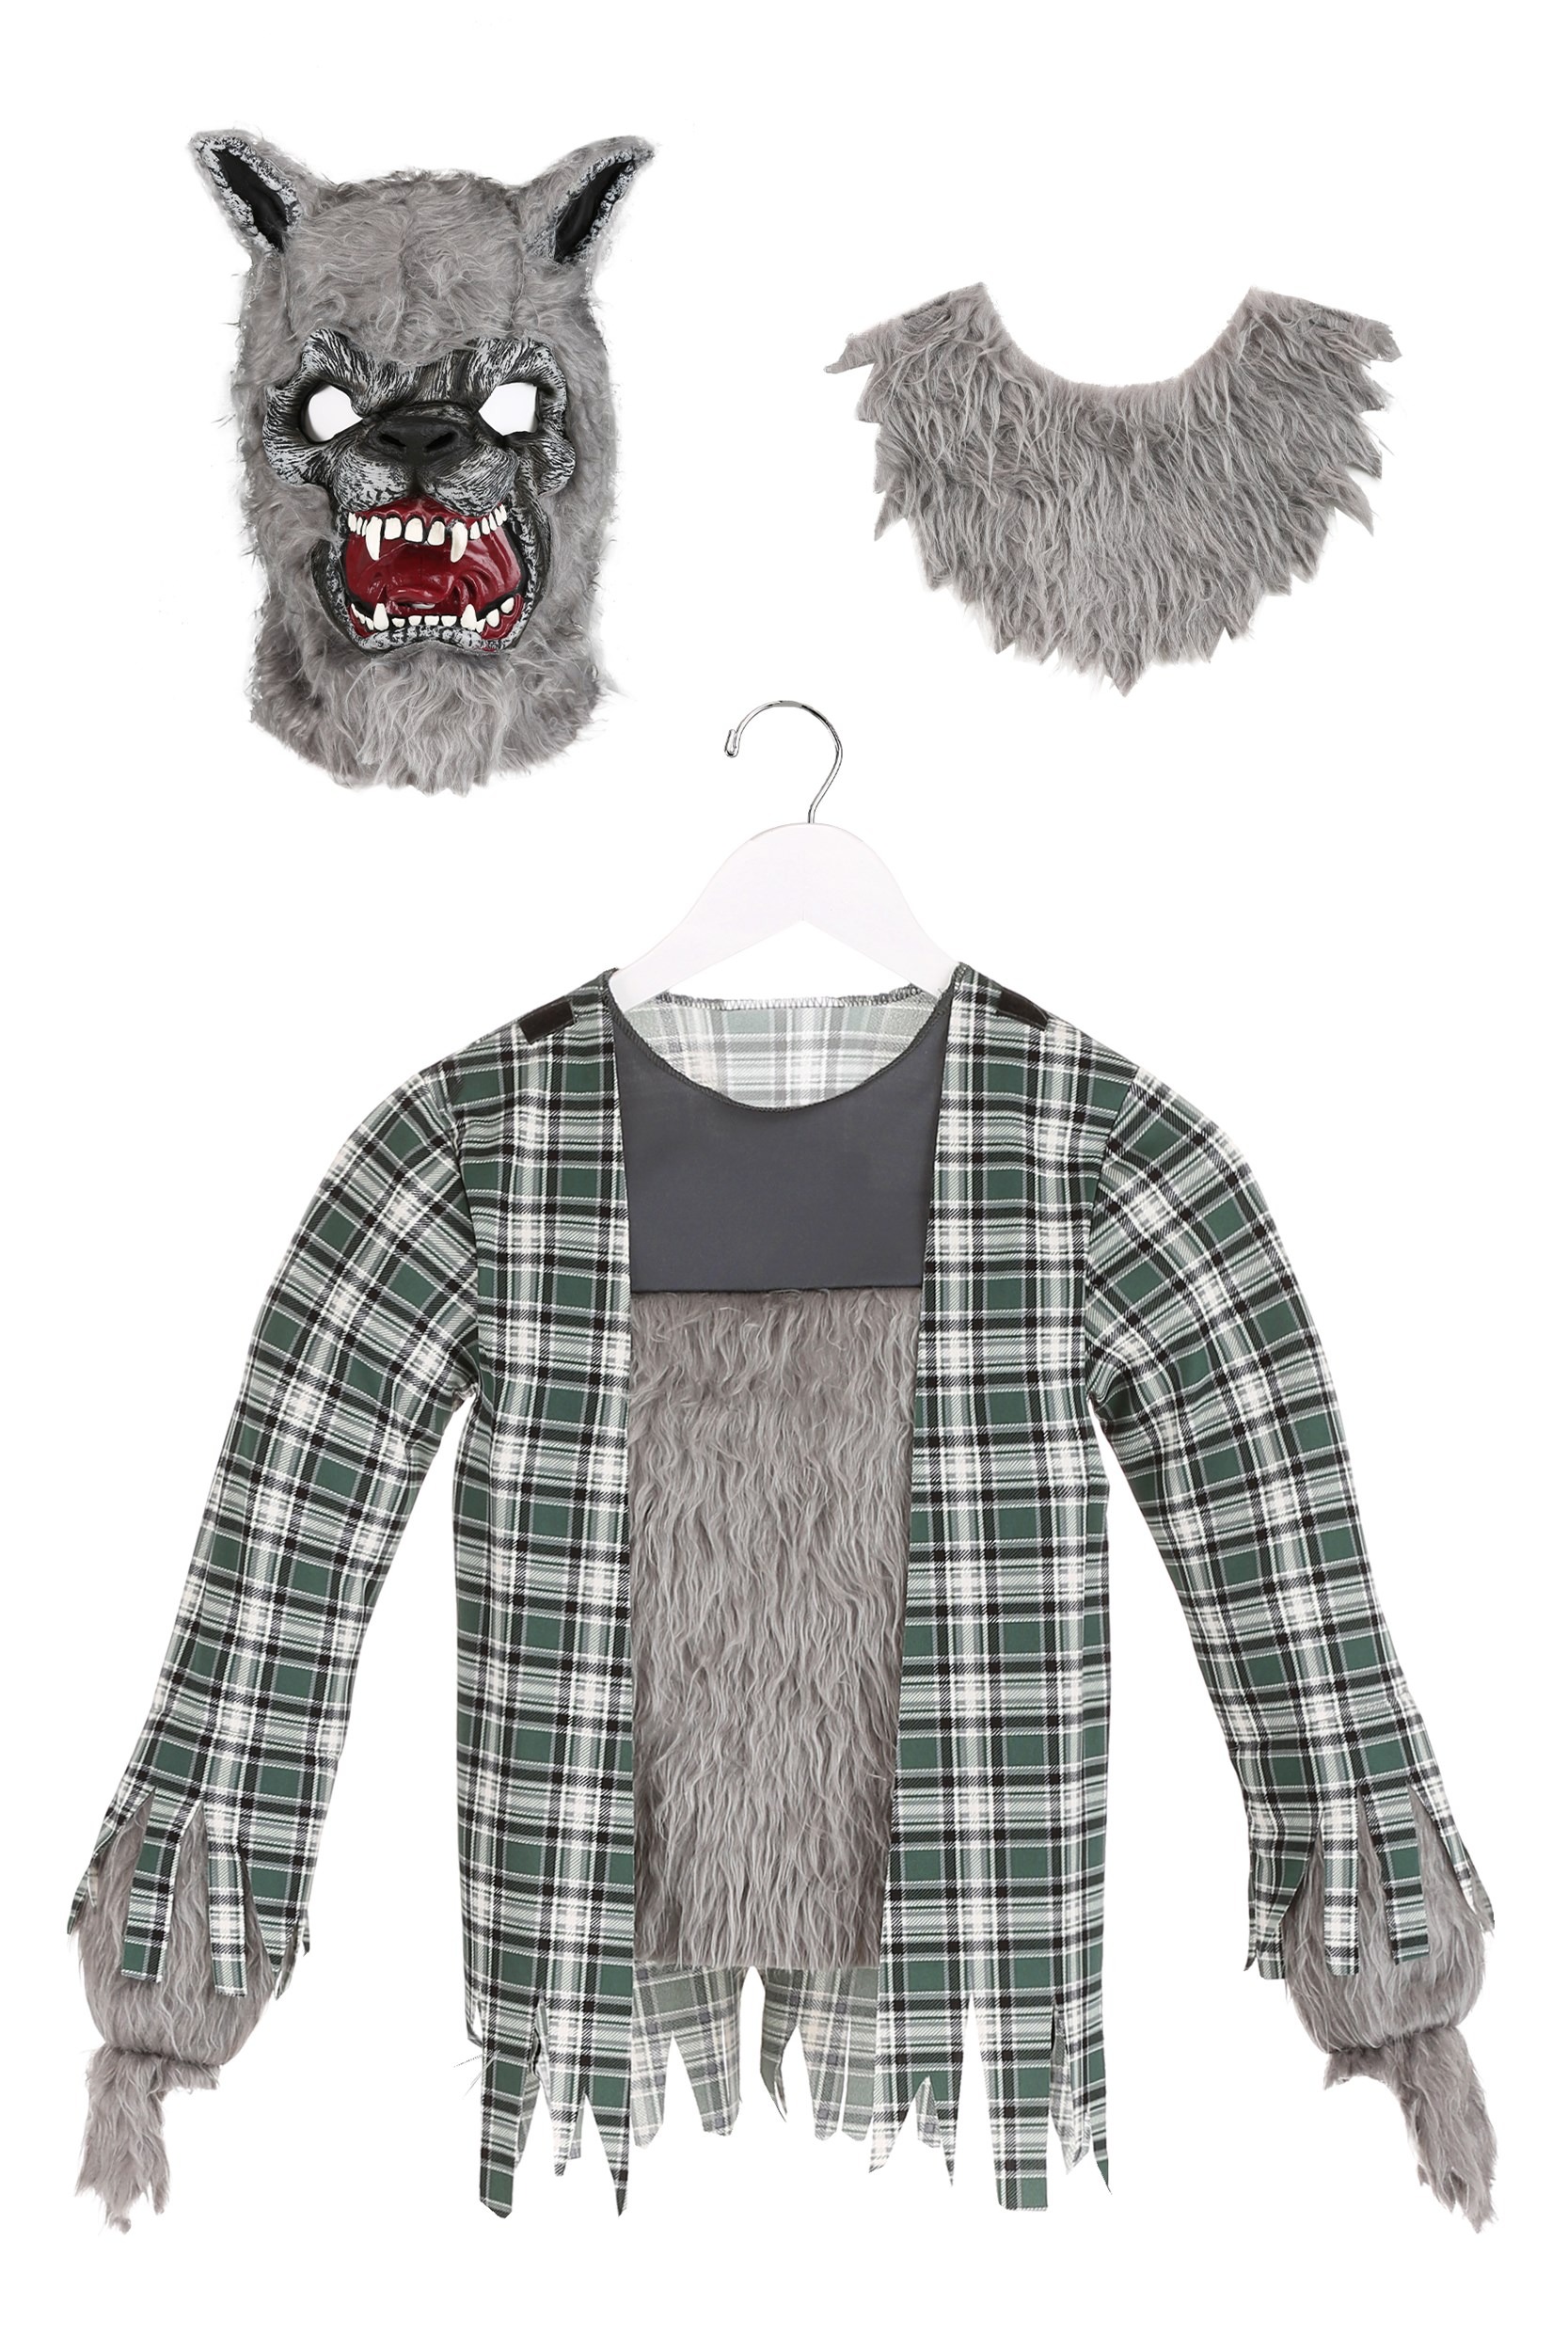 Werewolf Halloween Costume For Kids